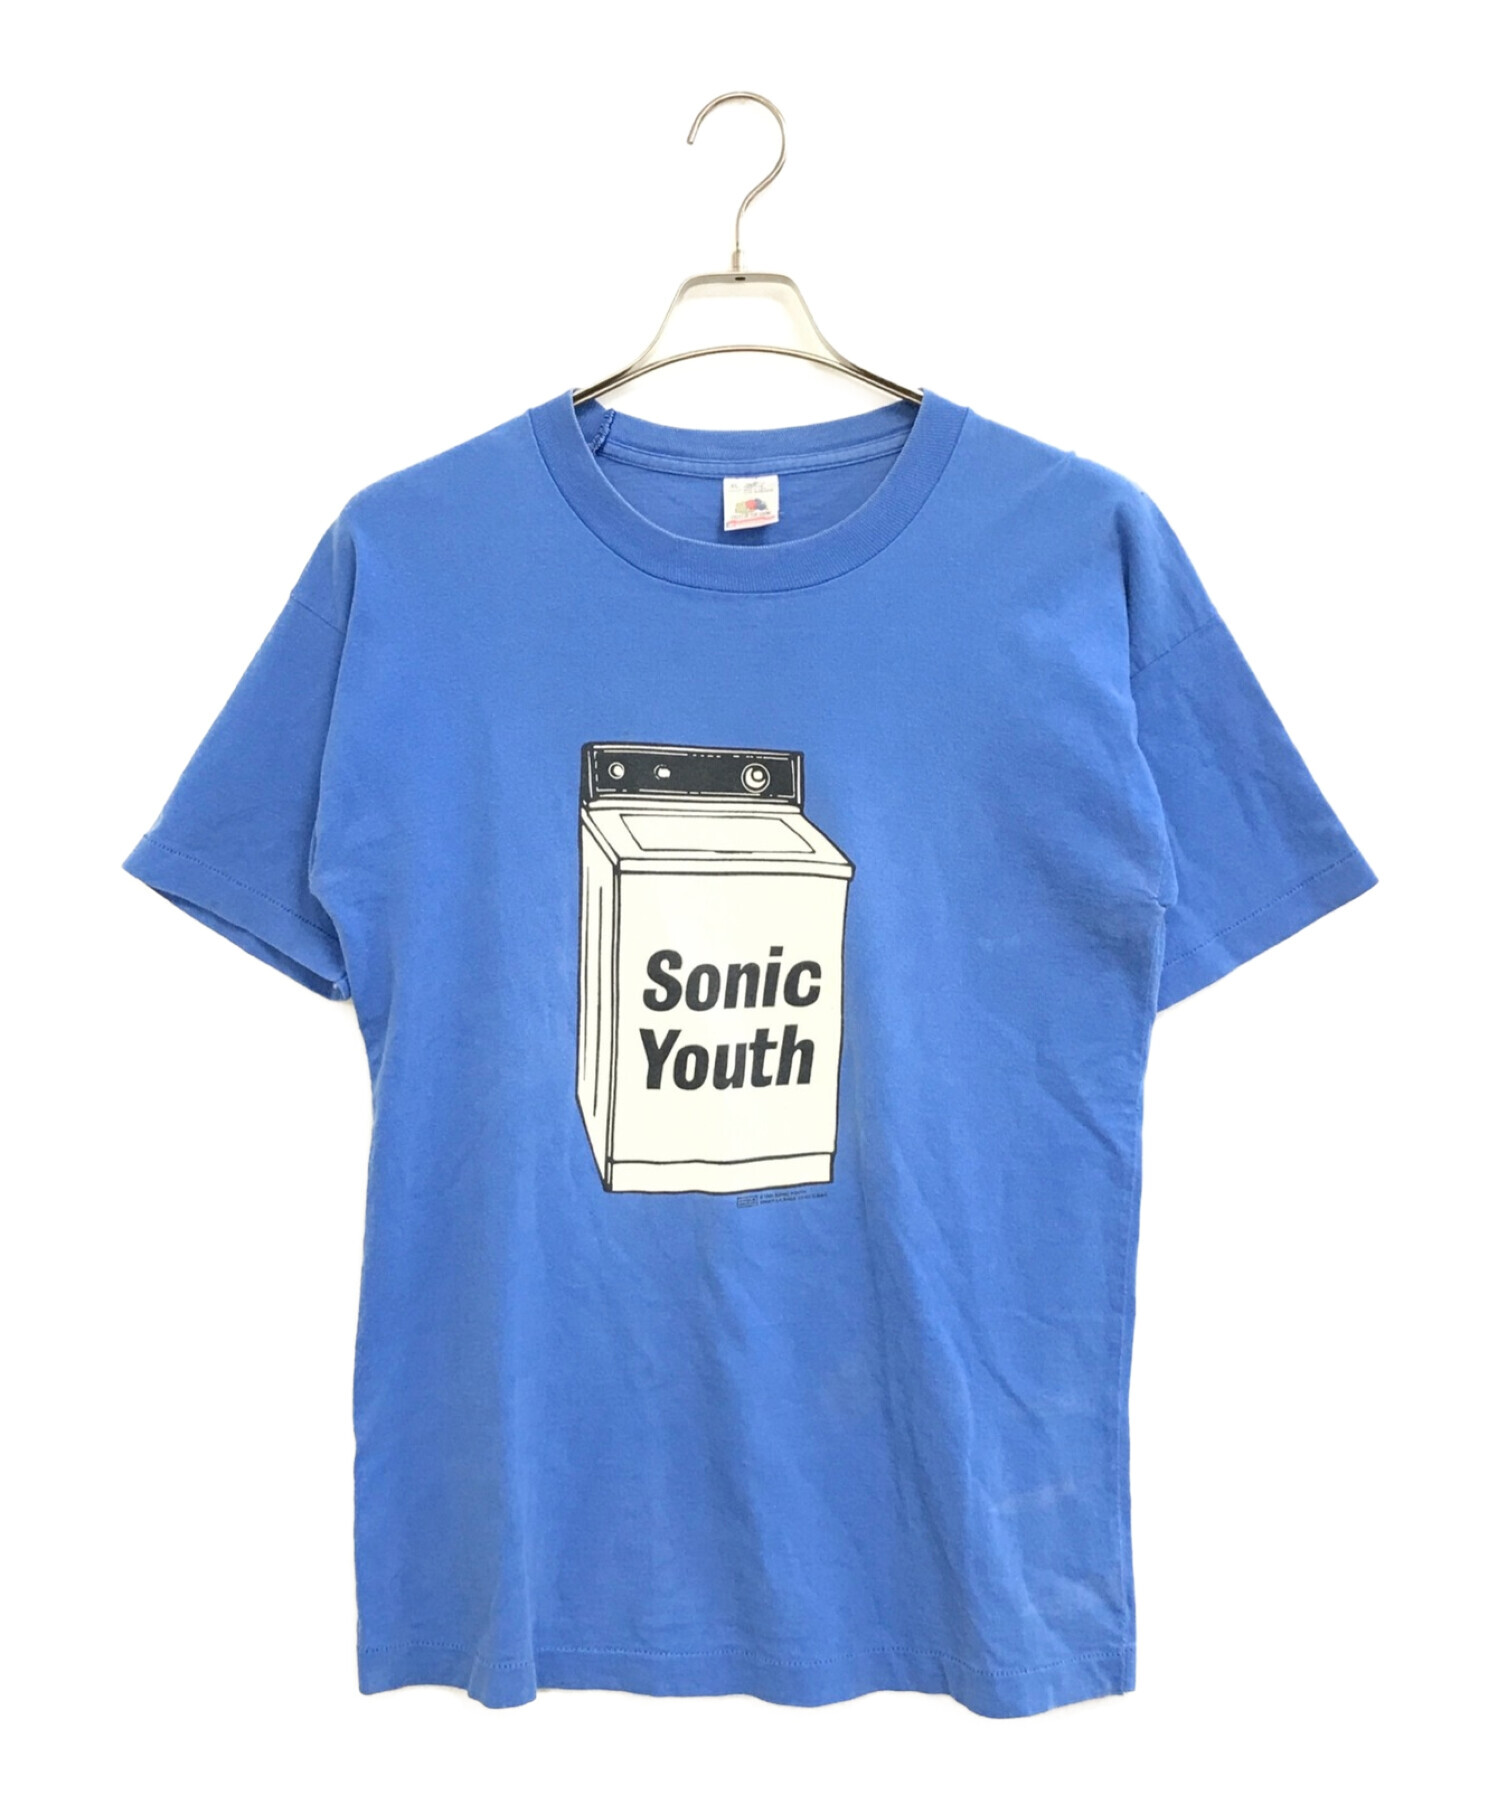 バンドTシャツ (バンドTシャツ) Sonic Youth(ソニック・ユース) バンドTシャツ ブルー サイズ:XL